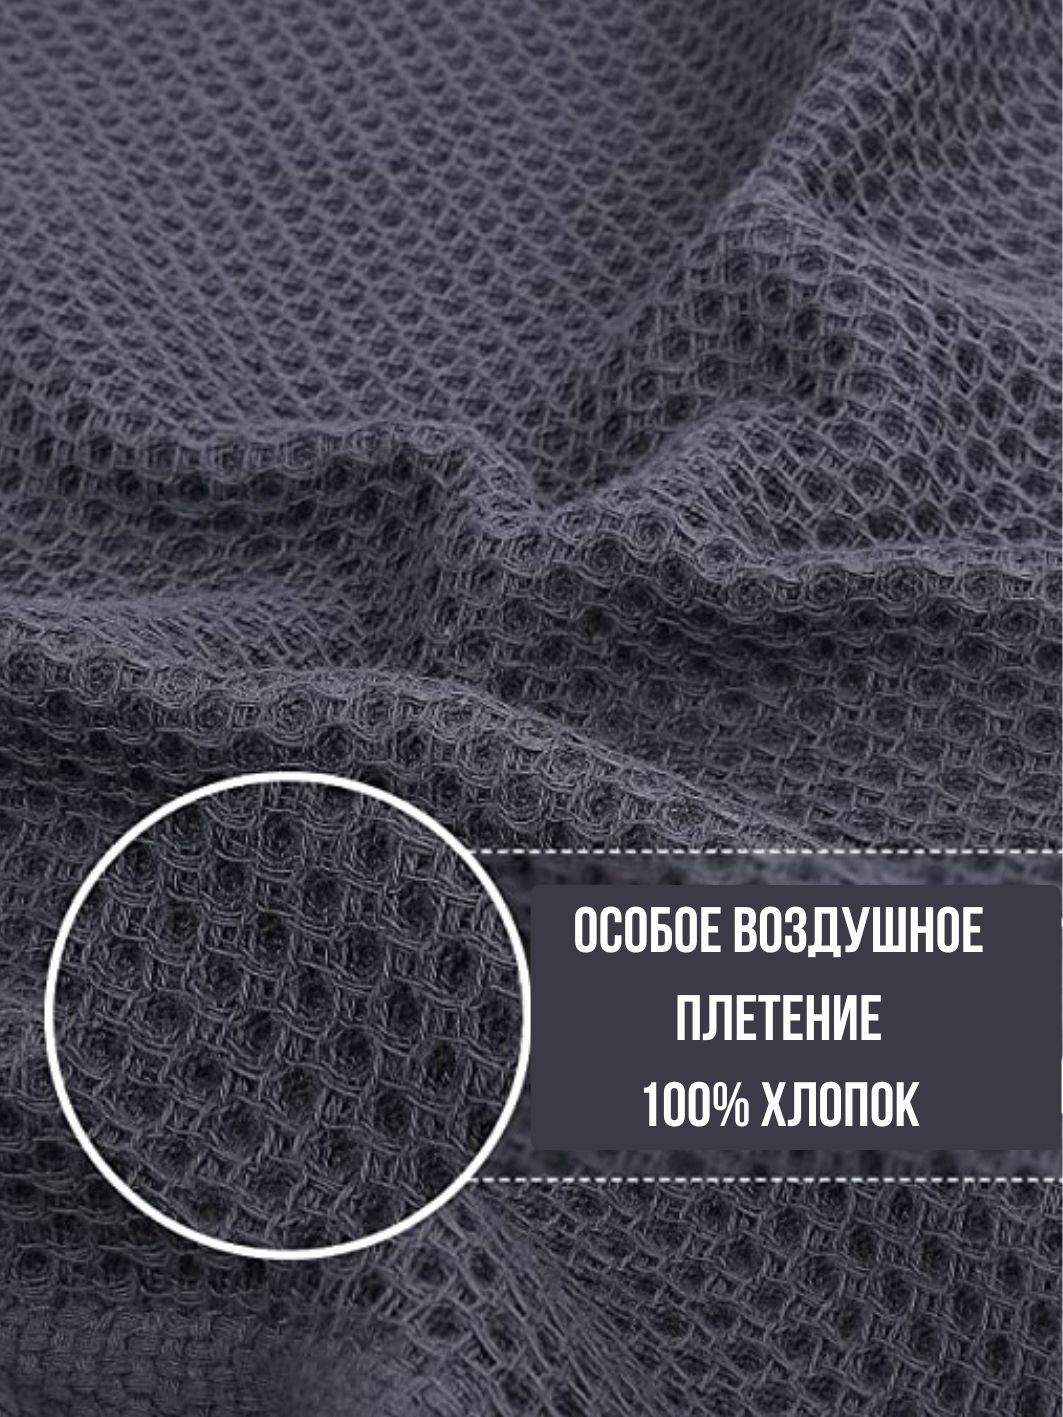 Уникальное плетение в виде воздушных сот делает полотенце одновременно прочным и мягким. Оно отлично впитывает, легко стирается и быстро сохнет.